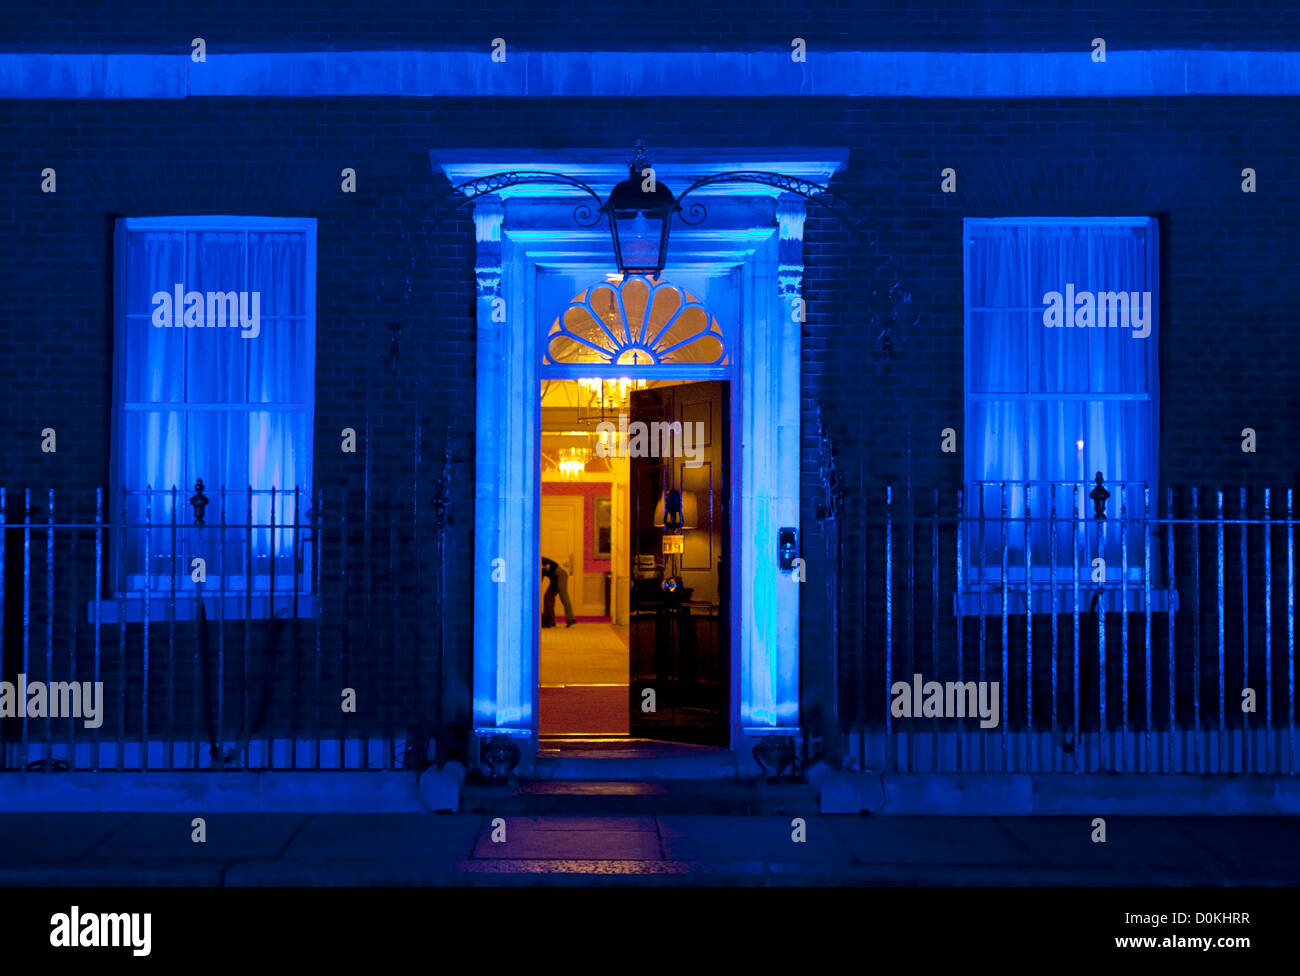 14.11.2012. London, Vereinigtes Königreich Downing Street heute Morgen (14.11.2012), beleuchtet in blau, für den Welt-Diabetes-Tag. Stockfoto